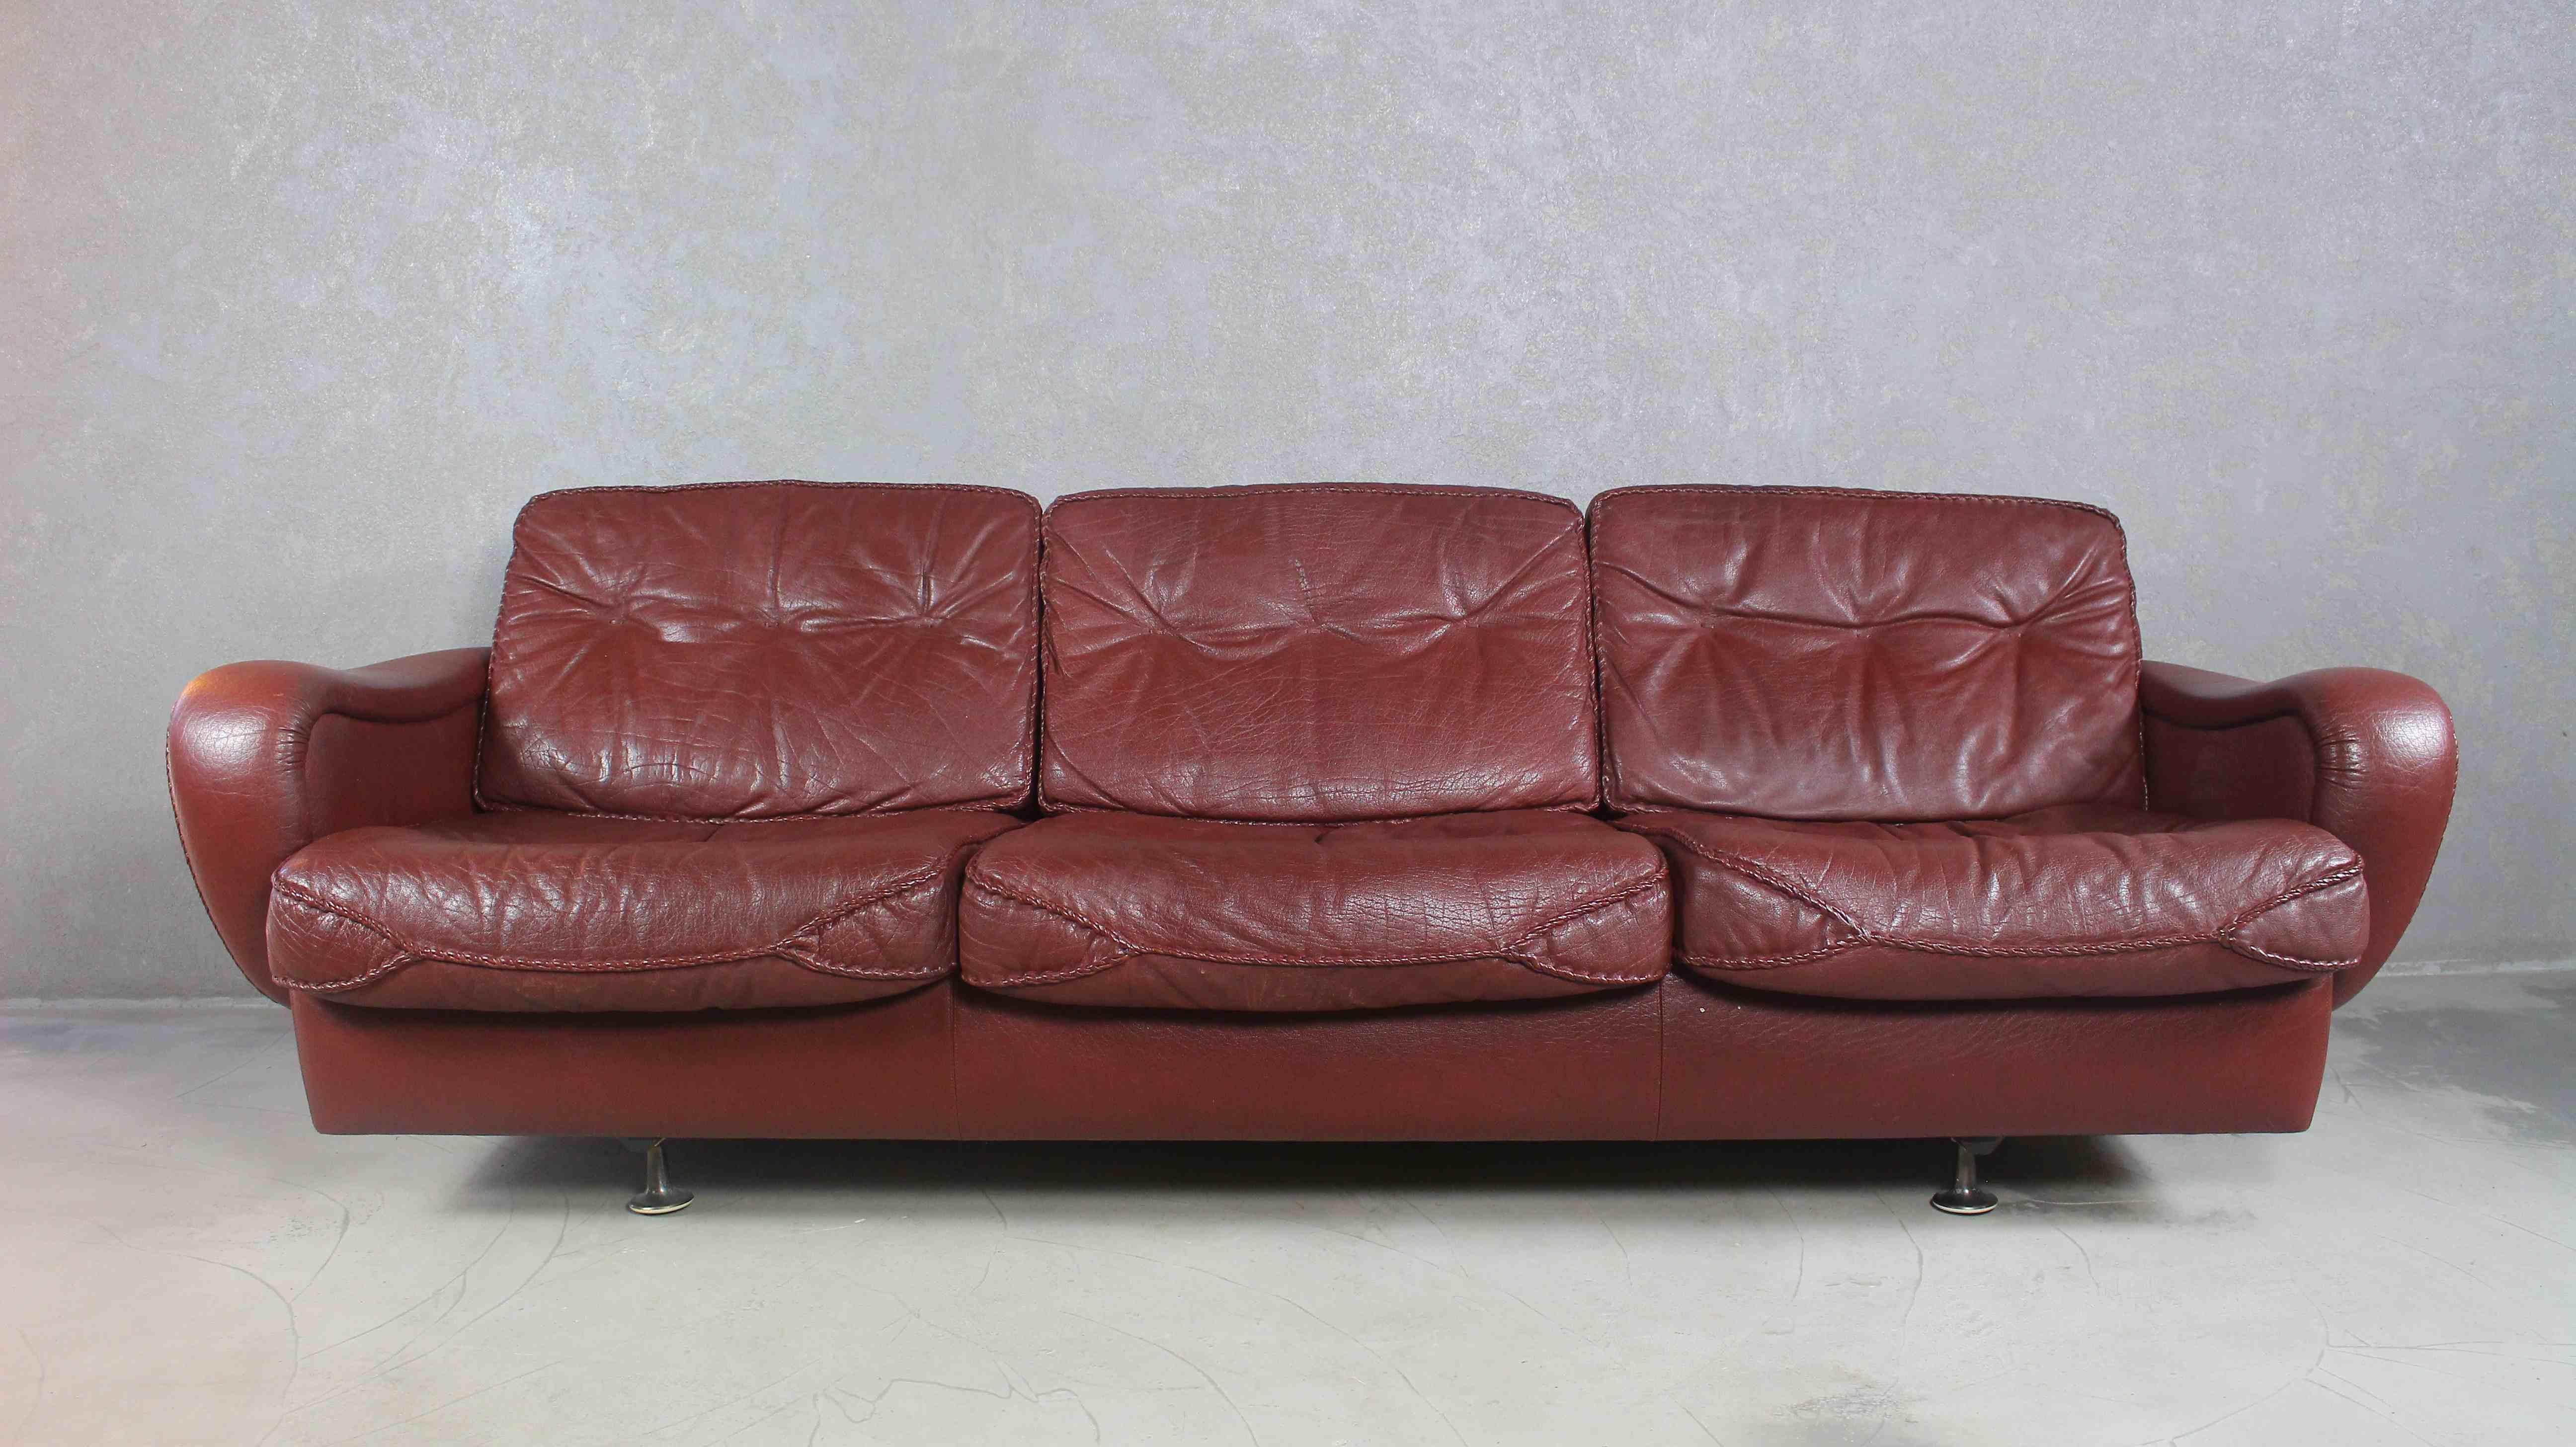 Un canapé danois très élégant des années 1970, conçu par le célèbre duo de designers Acton Schubell et IB Madsen.
Le canapé est entièrement recouvert de cuir de buffle texturé véritable, de couleur marron.
Les coussins du dossier sont ornés de